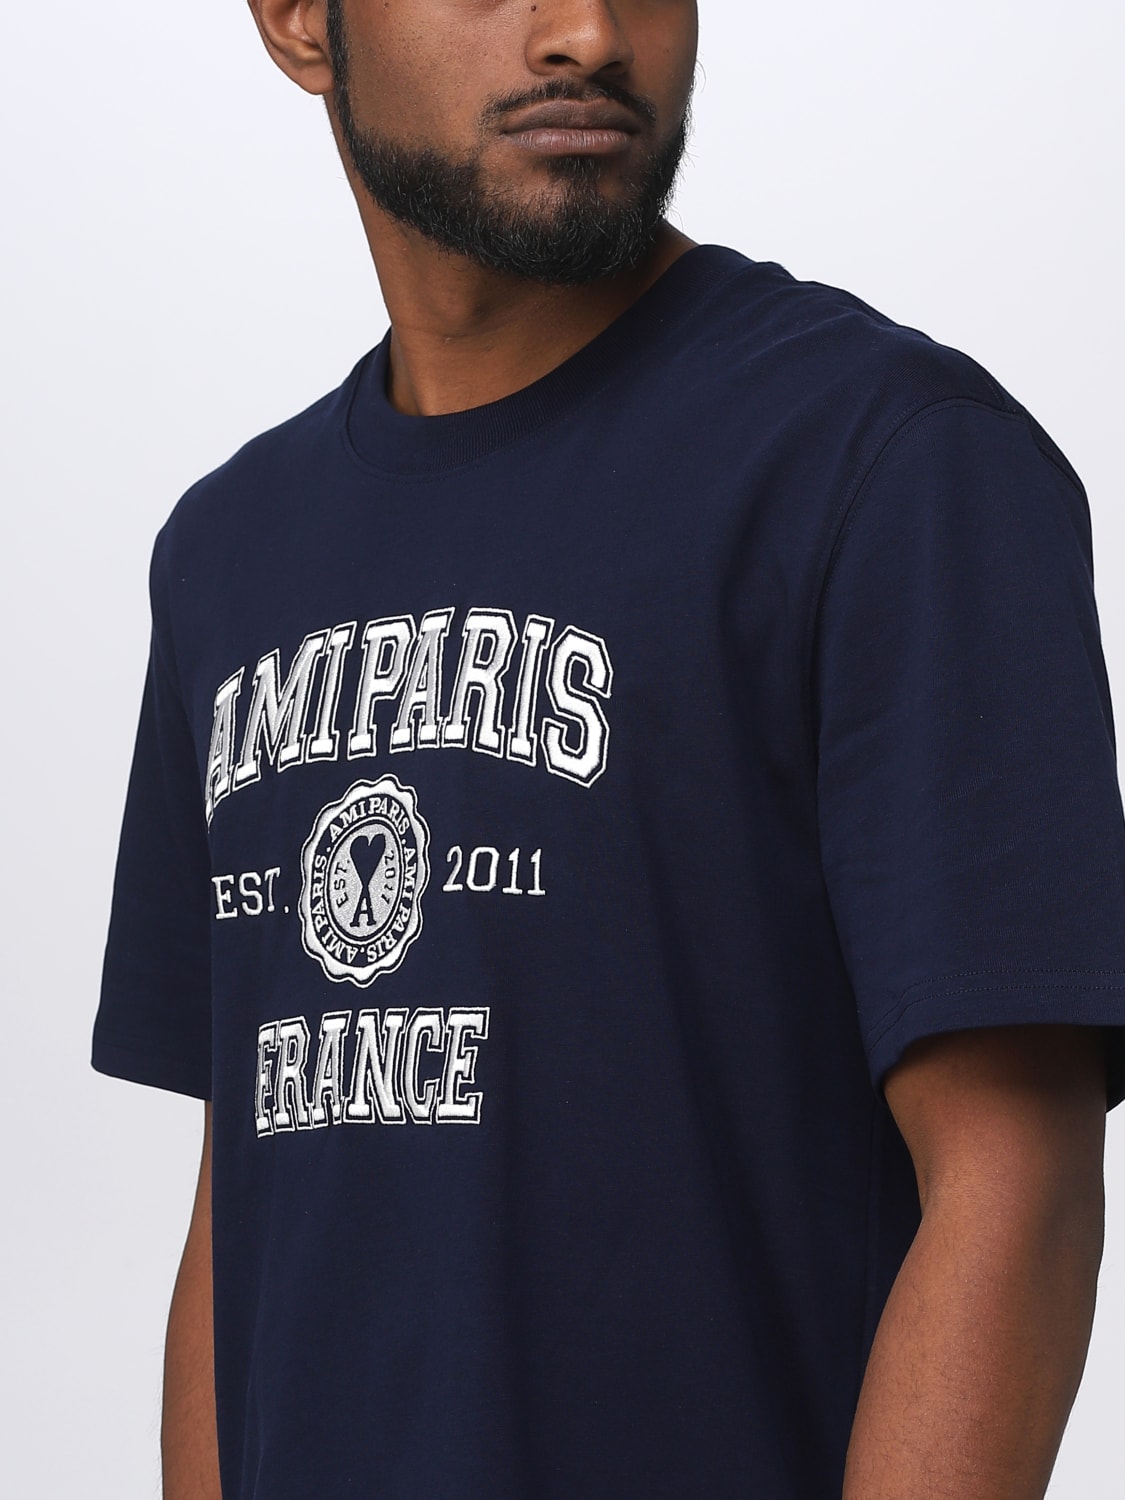 ユニセックス。AMIのTシャツ。ブルーSサイズ。 www.krzysztofbialy.com